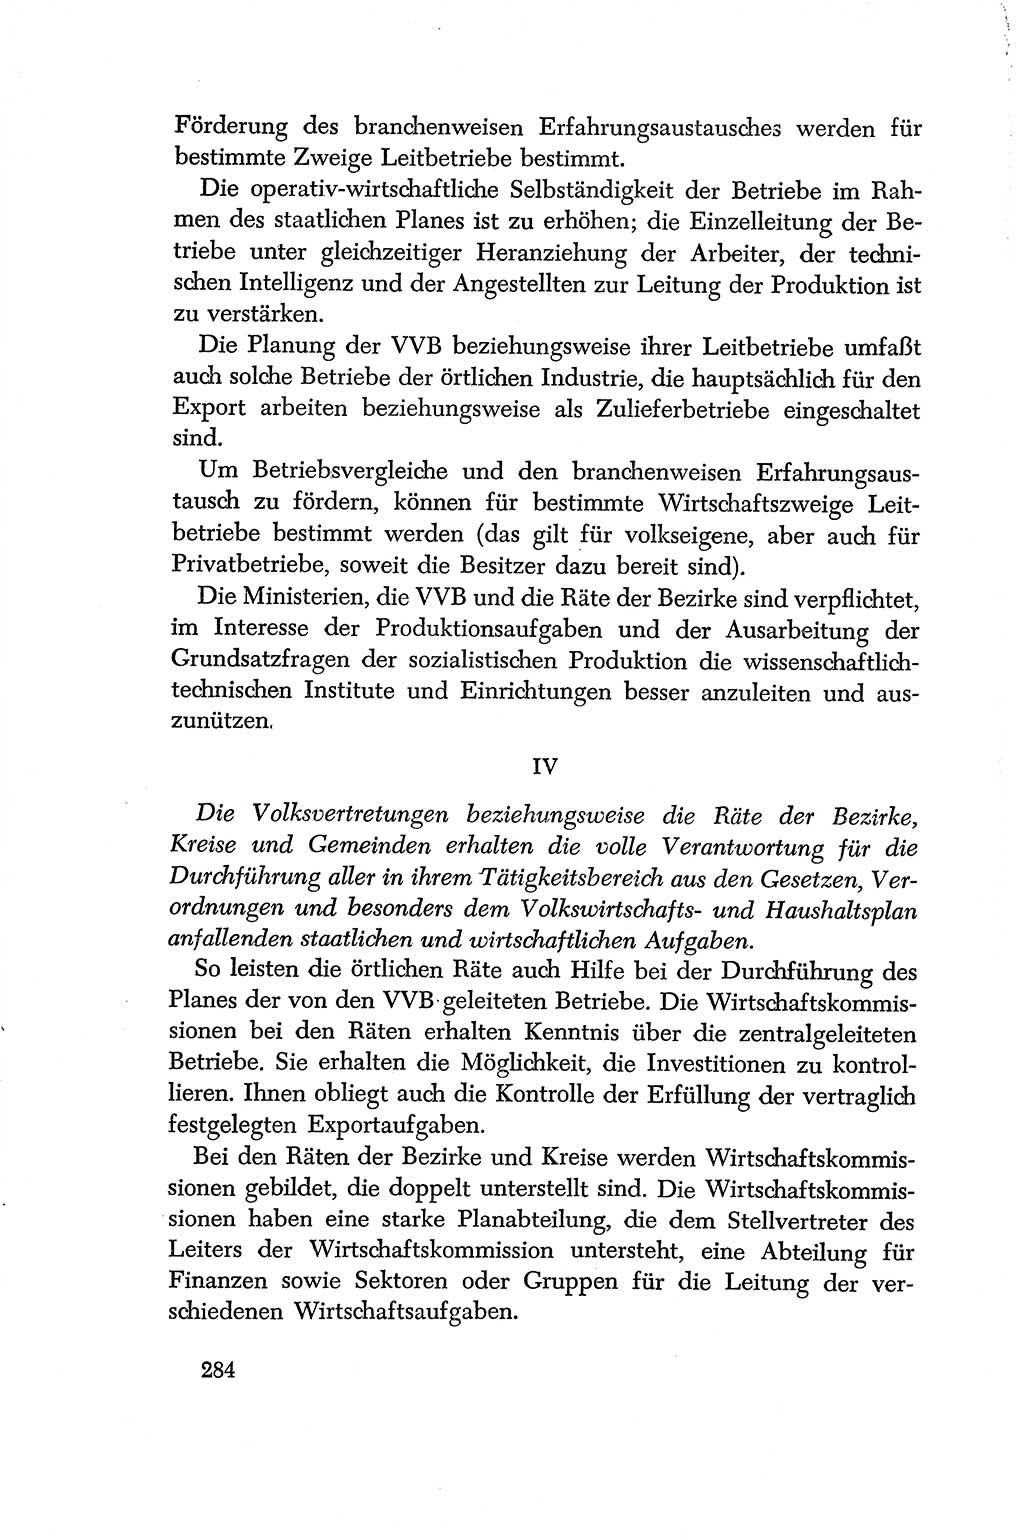 Dokumente der Sozialistischen Einheitspartei Deutschlands (SED) [Deutsche Demokratische Republik (DDR)] 1956-1957, Seite 284 (Dok. SED DDR 1956-1957, S. 284)